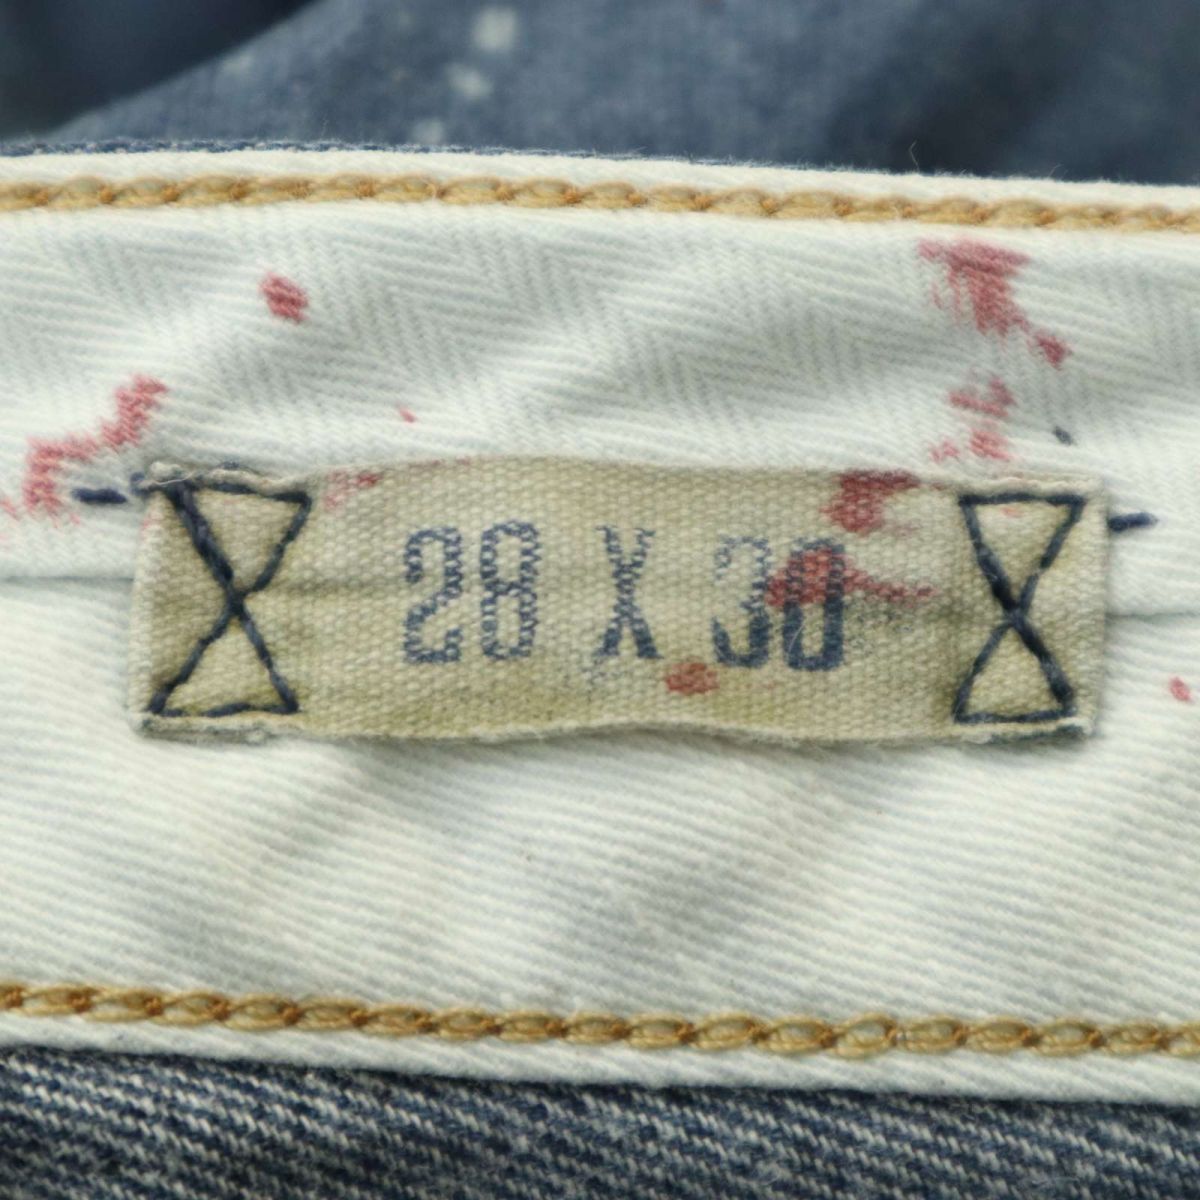 POLO RALPH LAUREN Polo Ralph Lauren crash & repair & paint processing * Denim pants jeans Sz.28 men's A4B00099_1#R